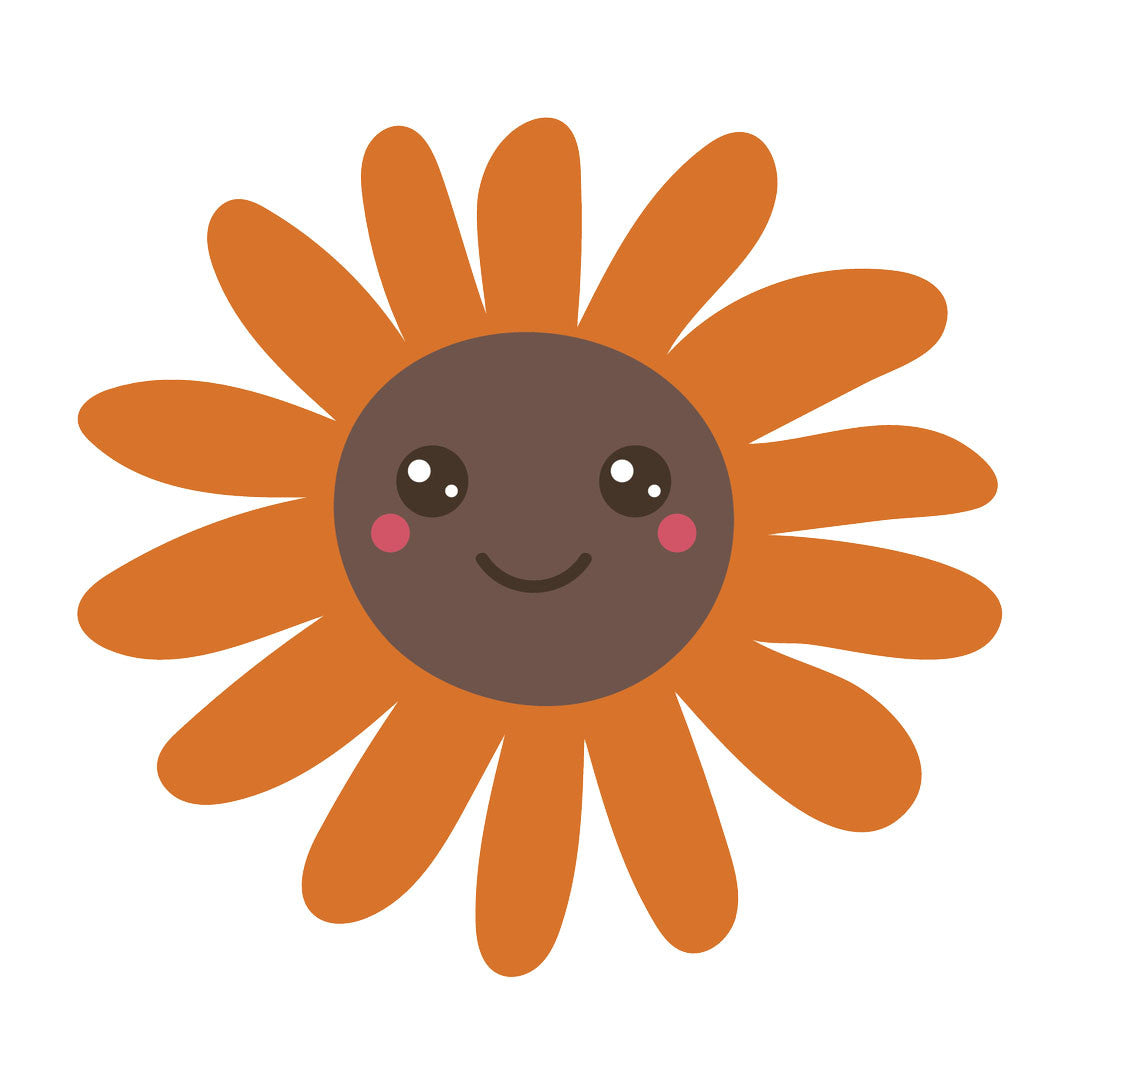 Happy Flower Emoji - Orange Sunflower Vinyl Decal Sticker